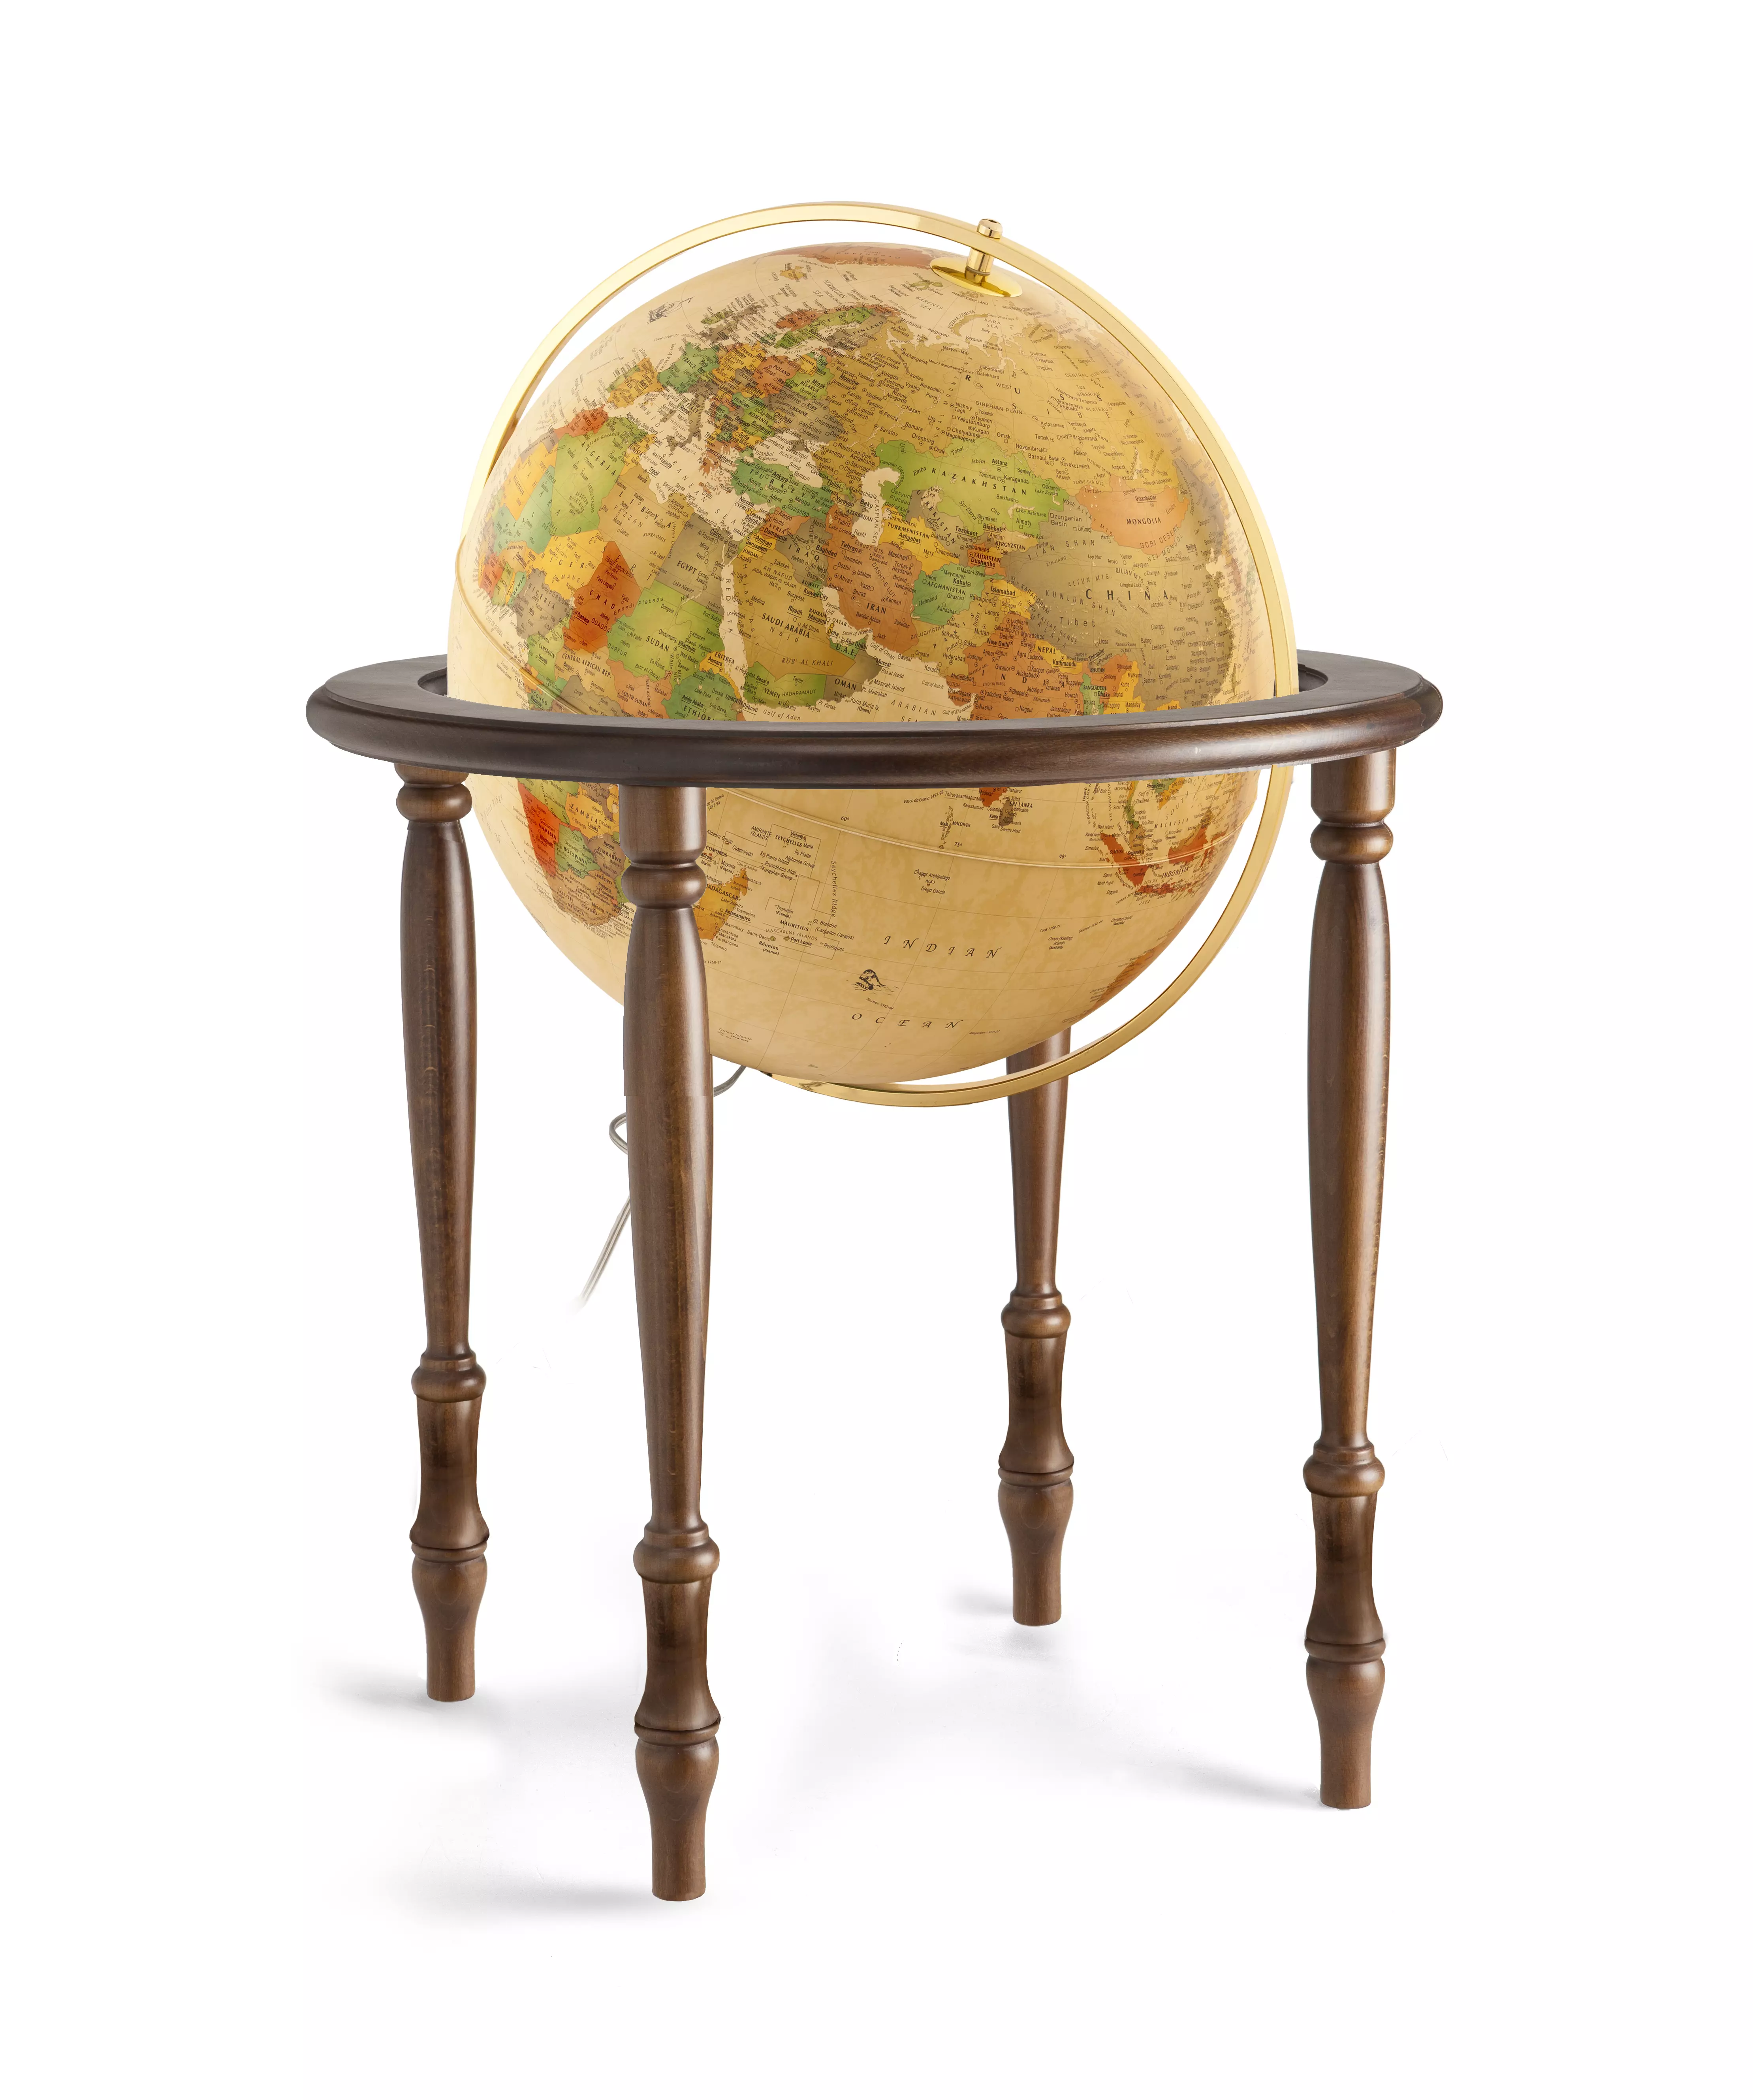 Glob pământesc CINTHIA Antique, 50 cm - iluminat, talpa din lemn de stejar, meridian din bronz, National Geographic (limba engleză)